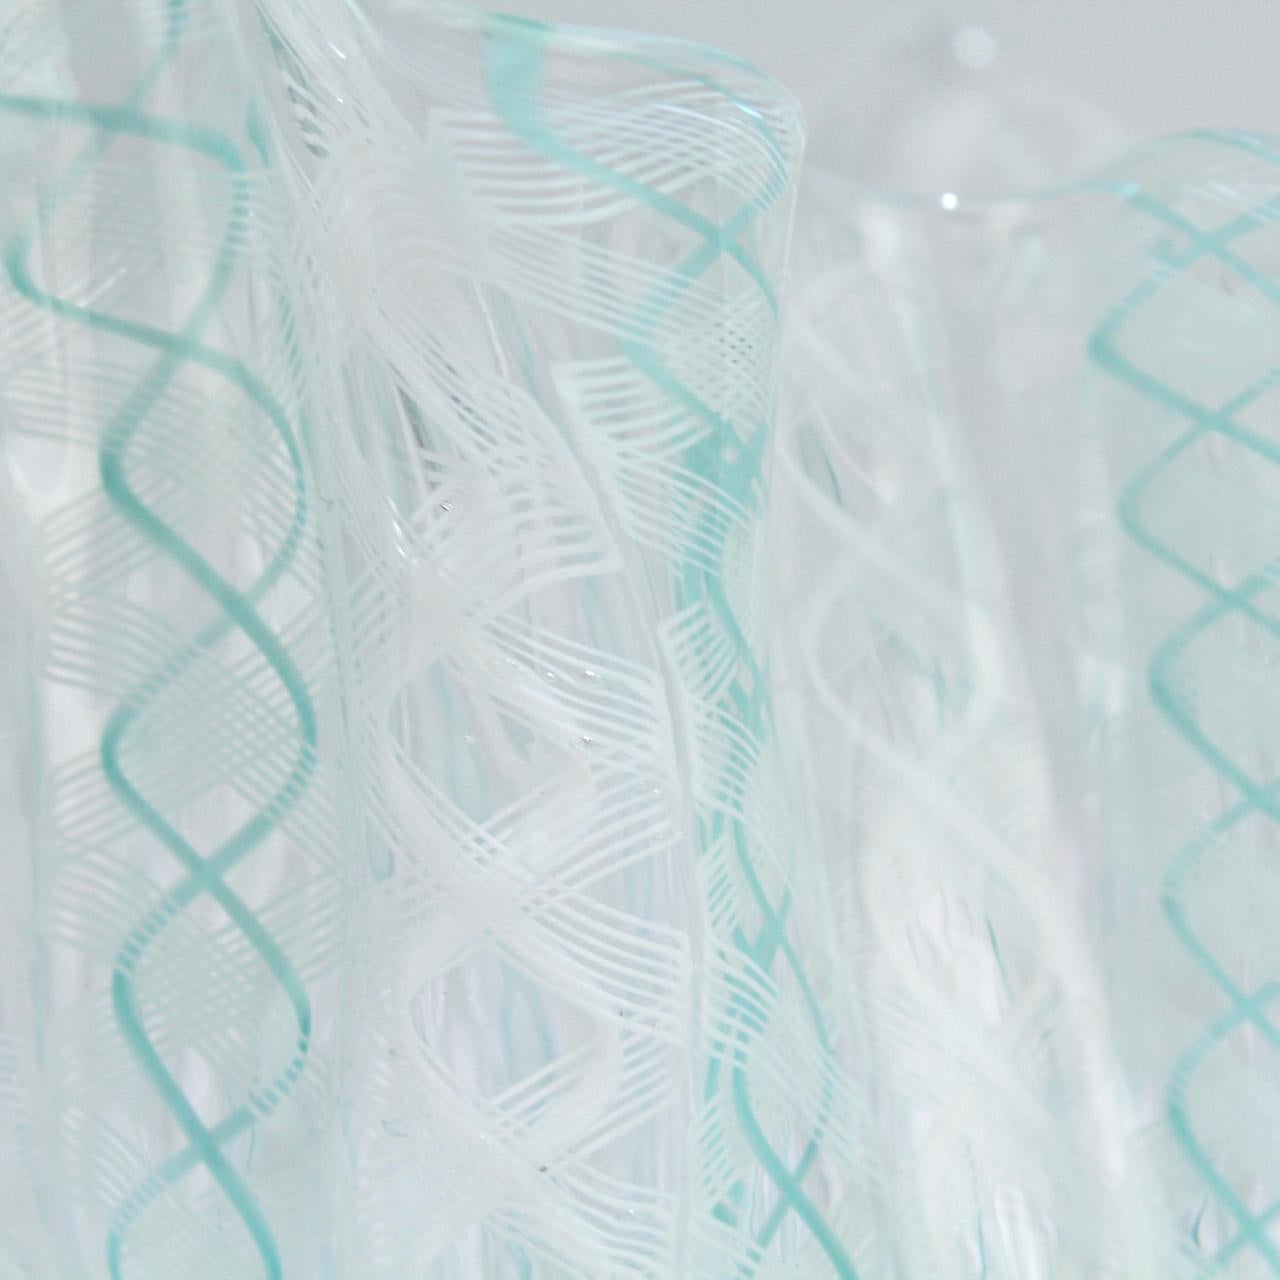 20th Century Fazzoletto Handkerchief Vase by Fulvio Bianconi & Paolo Venini for Venini Glass